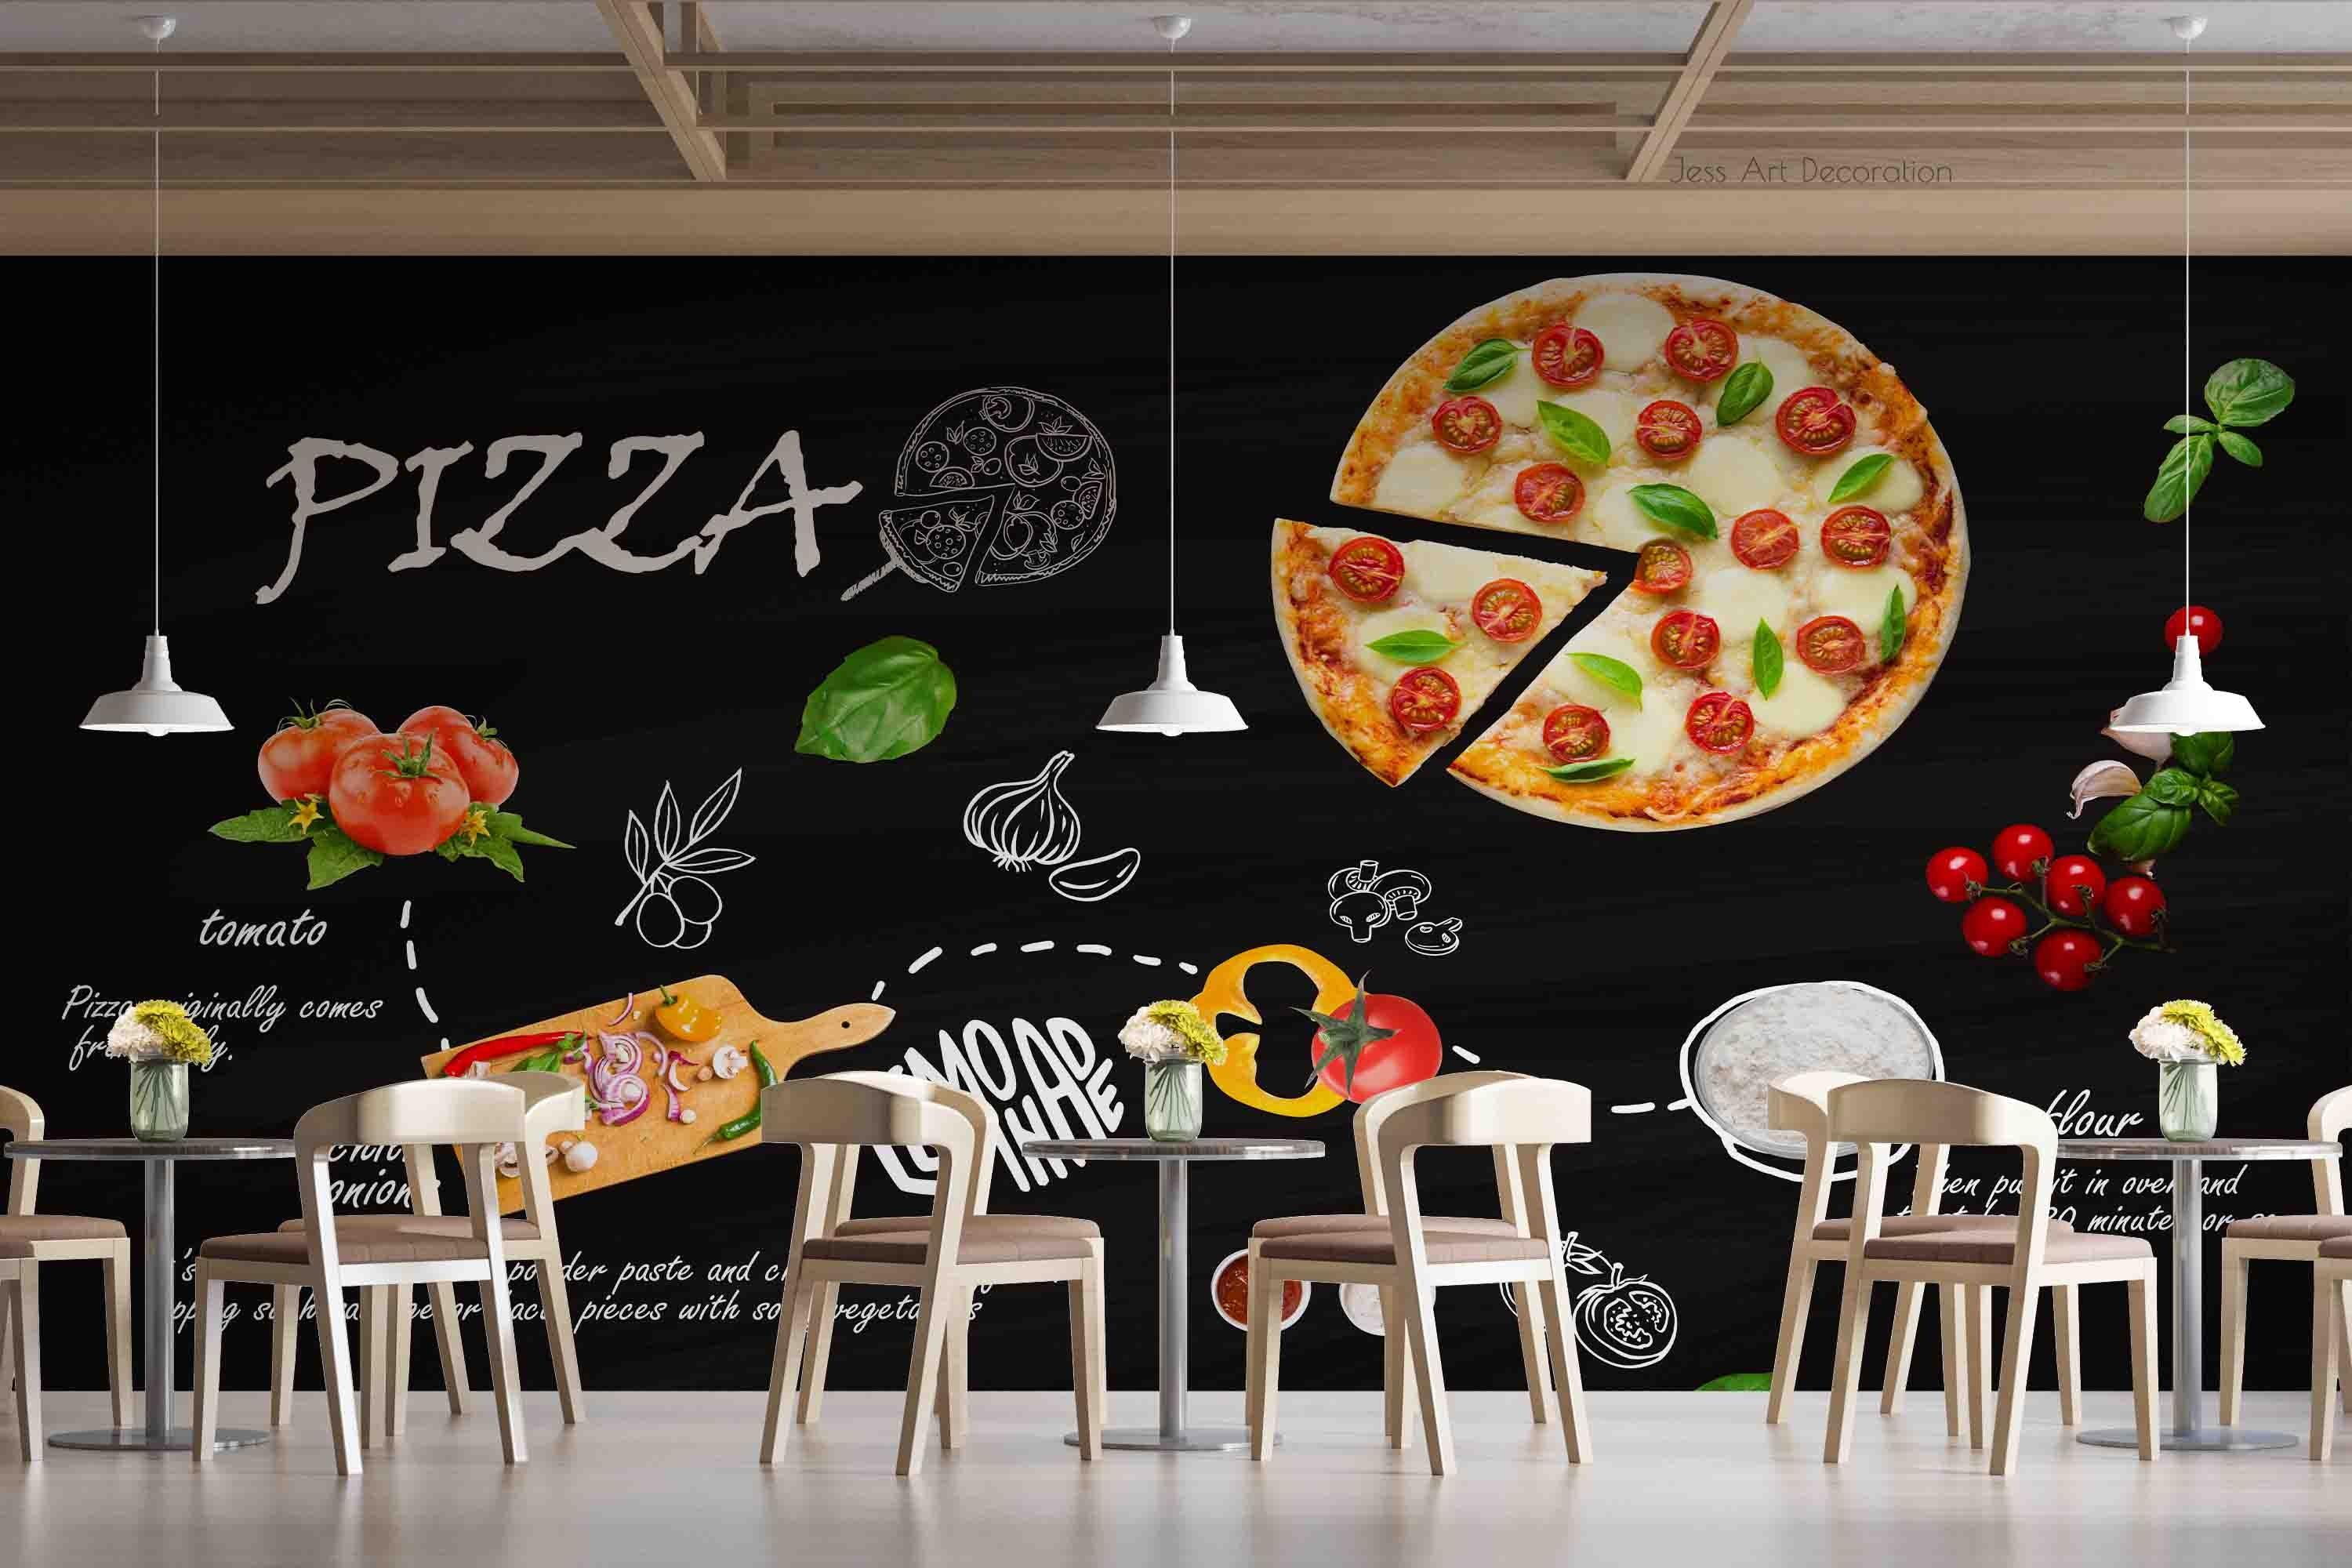 3D Blackboard Pizza Wall Mural Wallpaper sww 77- Jess Art Decoration